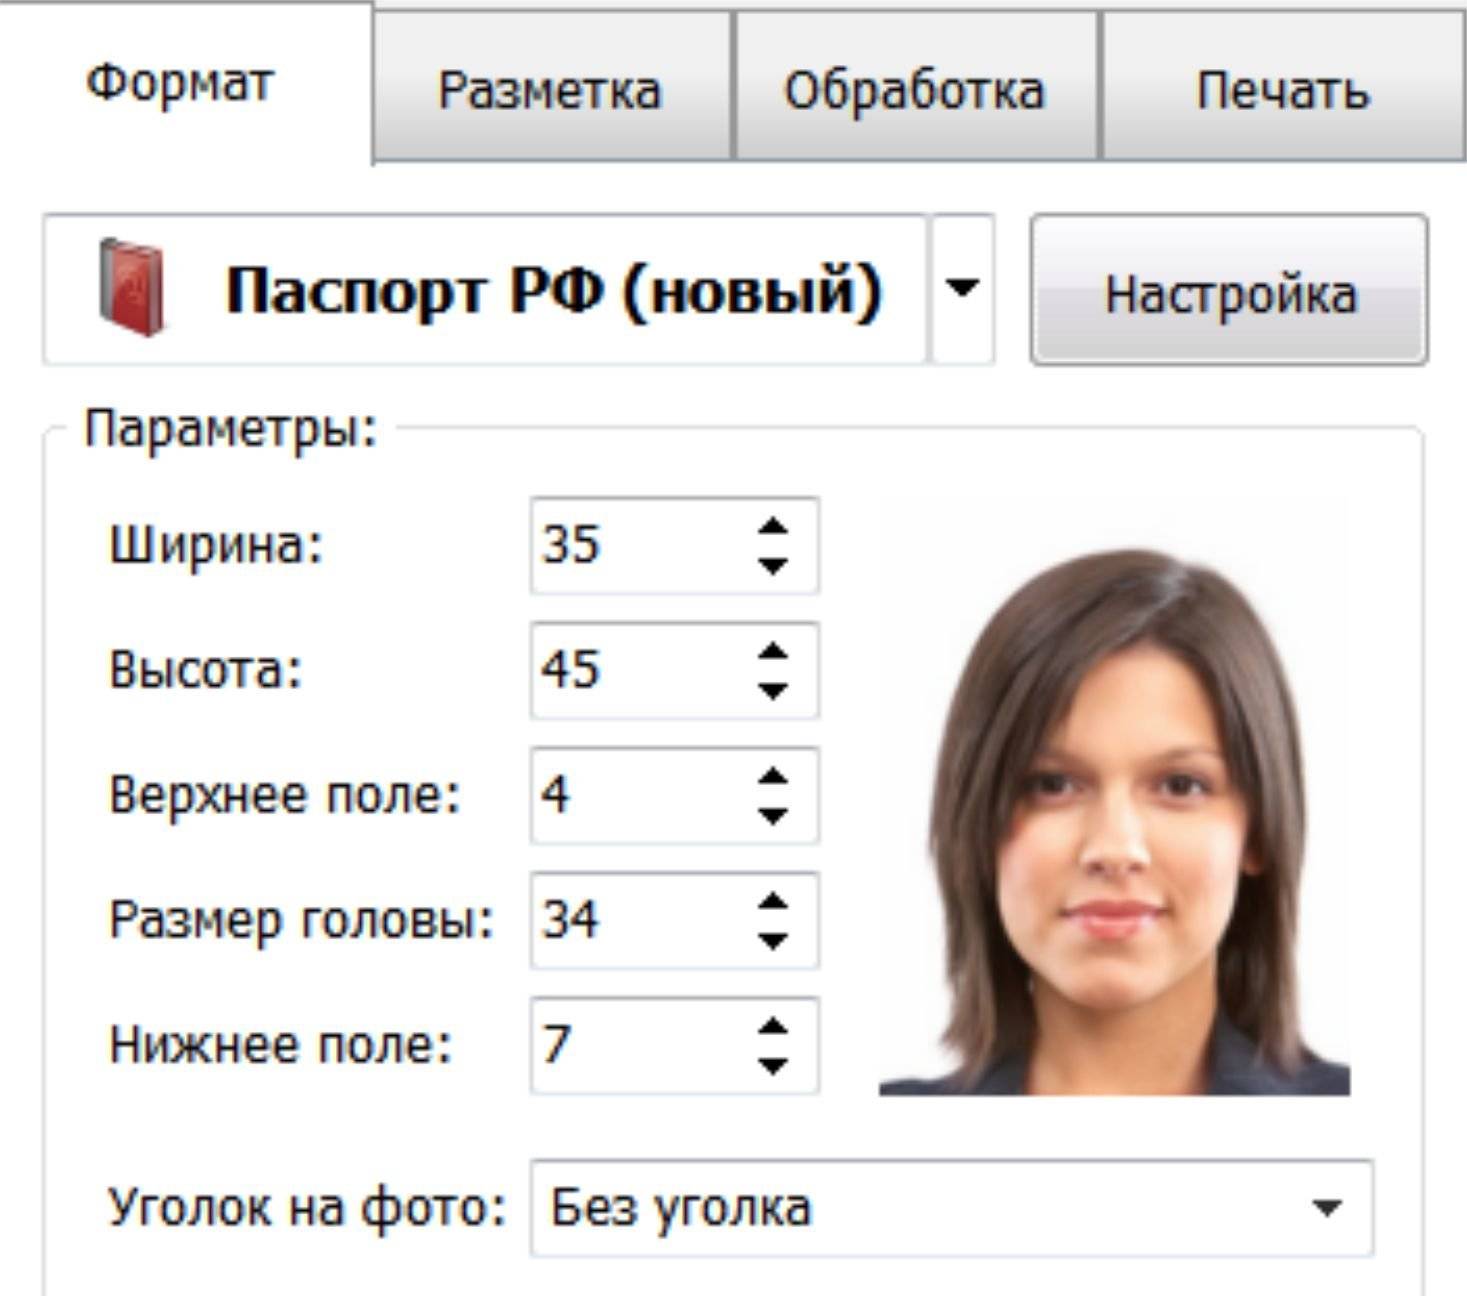 фото на российский паспорт параметры